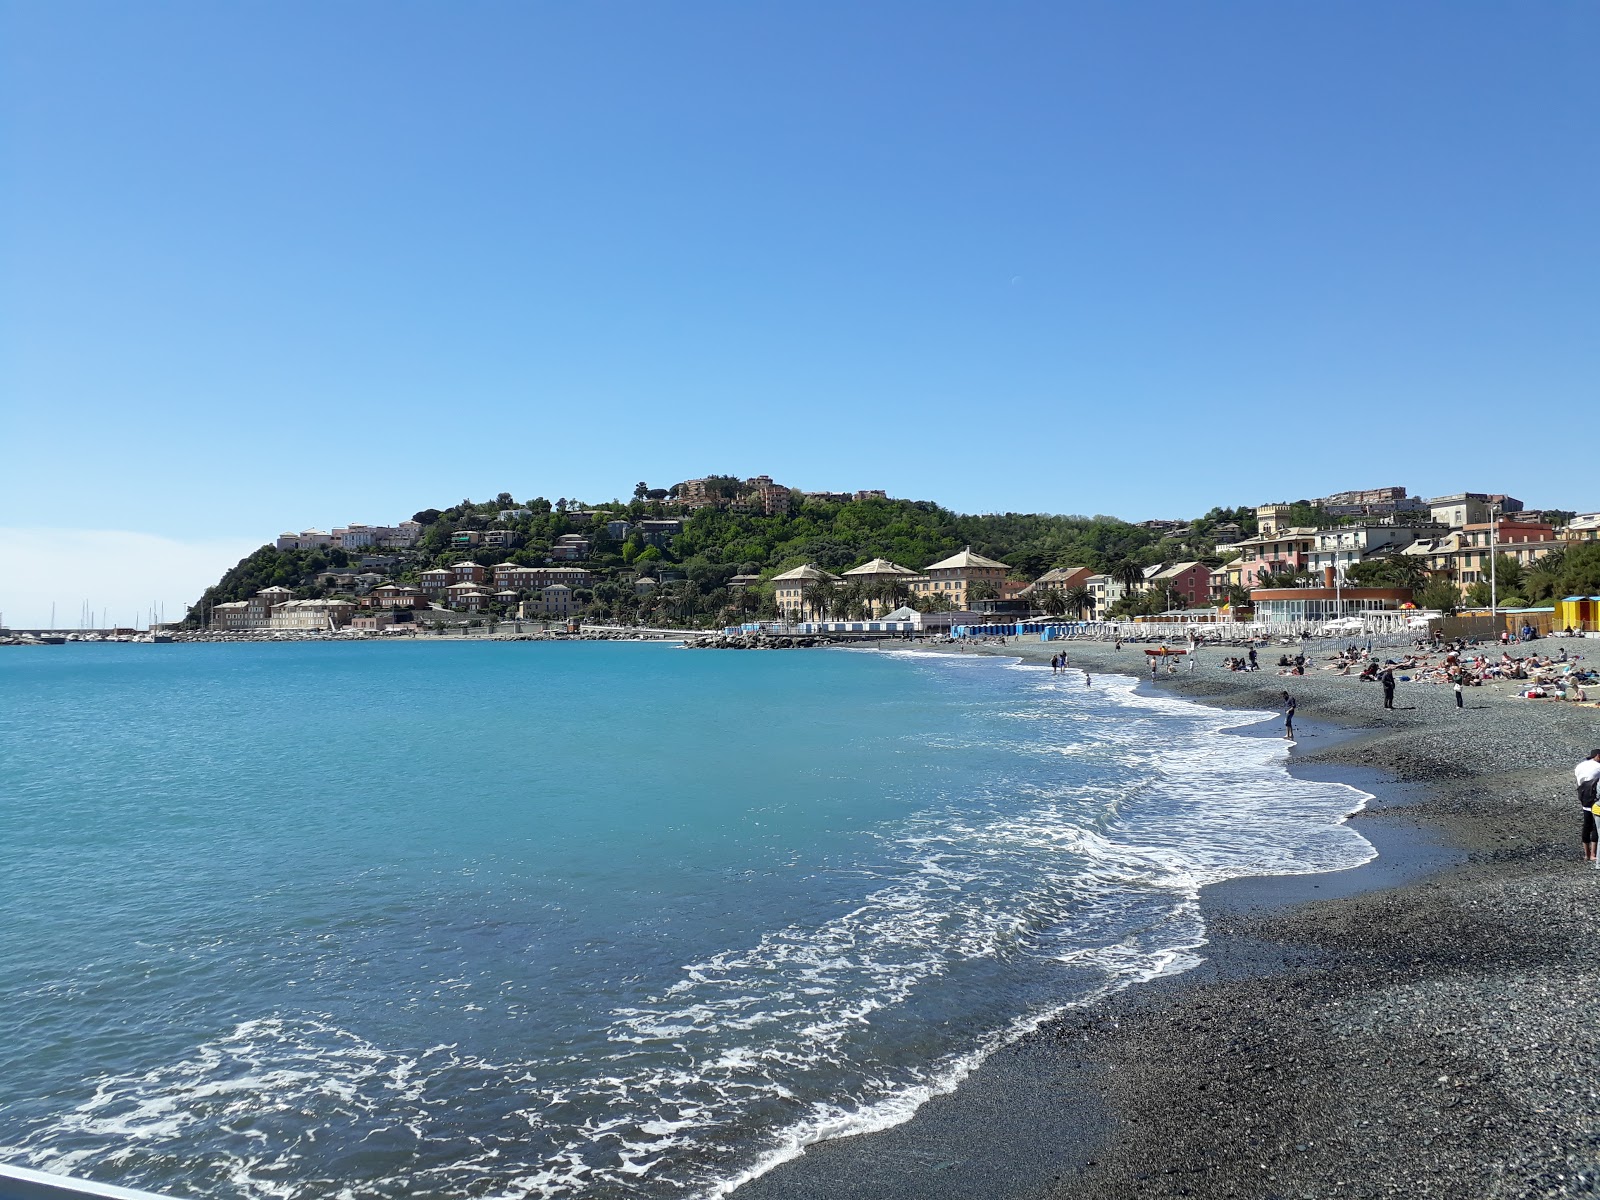 Spiaggia di Arenzano'in fotoğrafı siyah kum ve çakıl yüzey ile